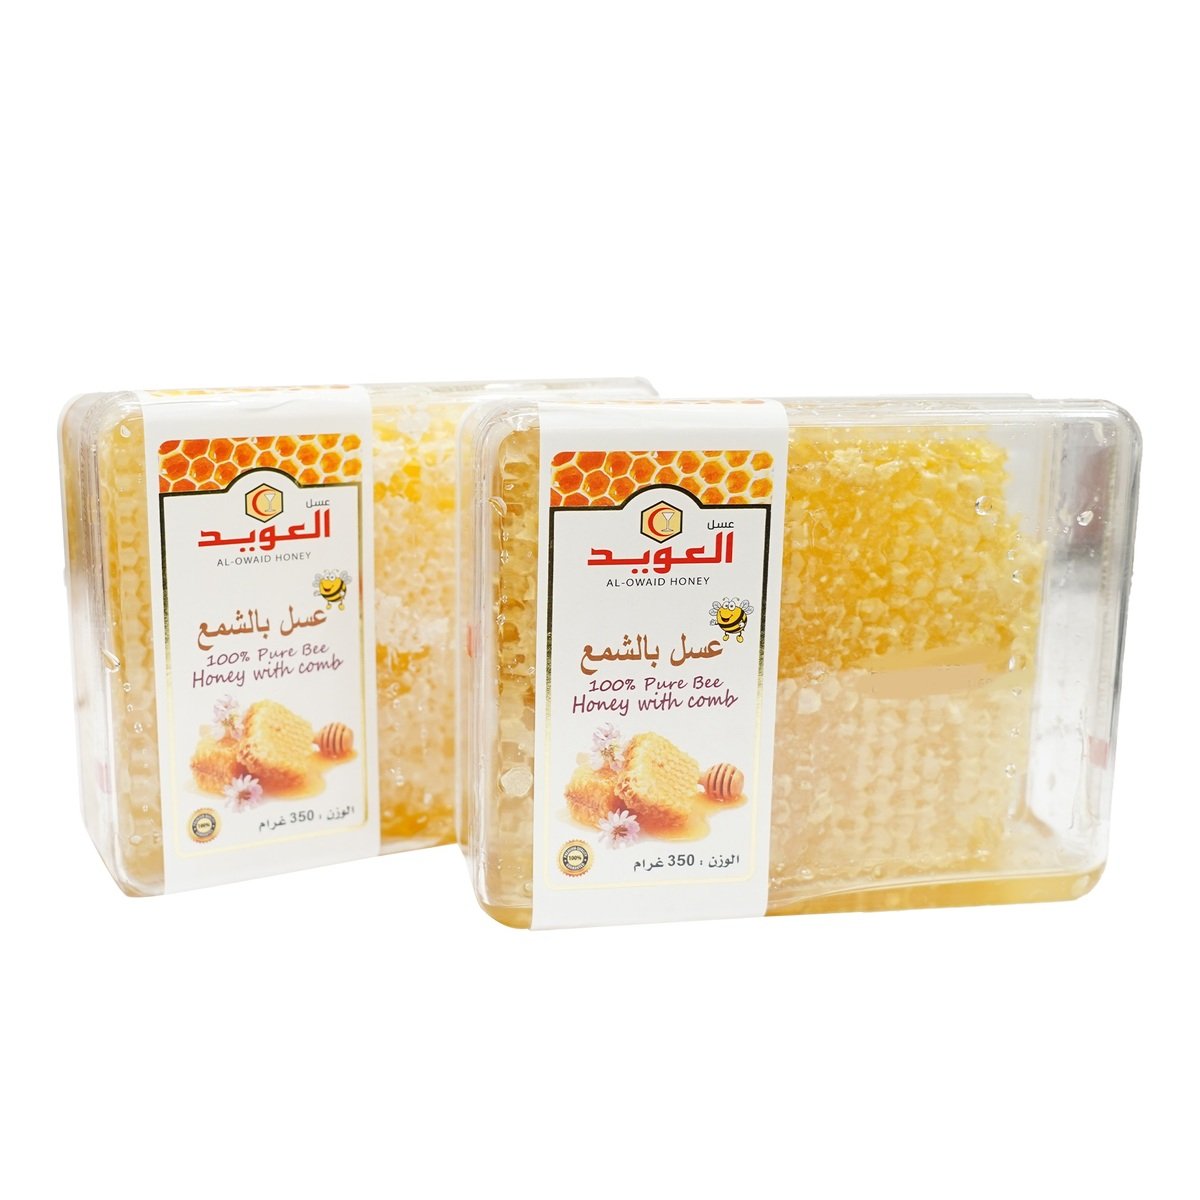 Al Owaid Honey Comb Value Pack 2 x 350 g